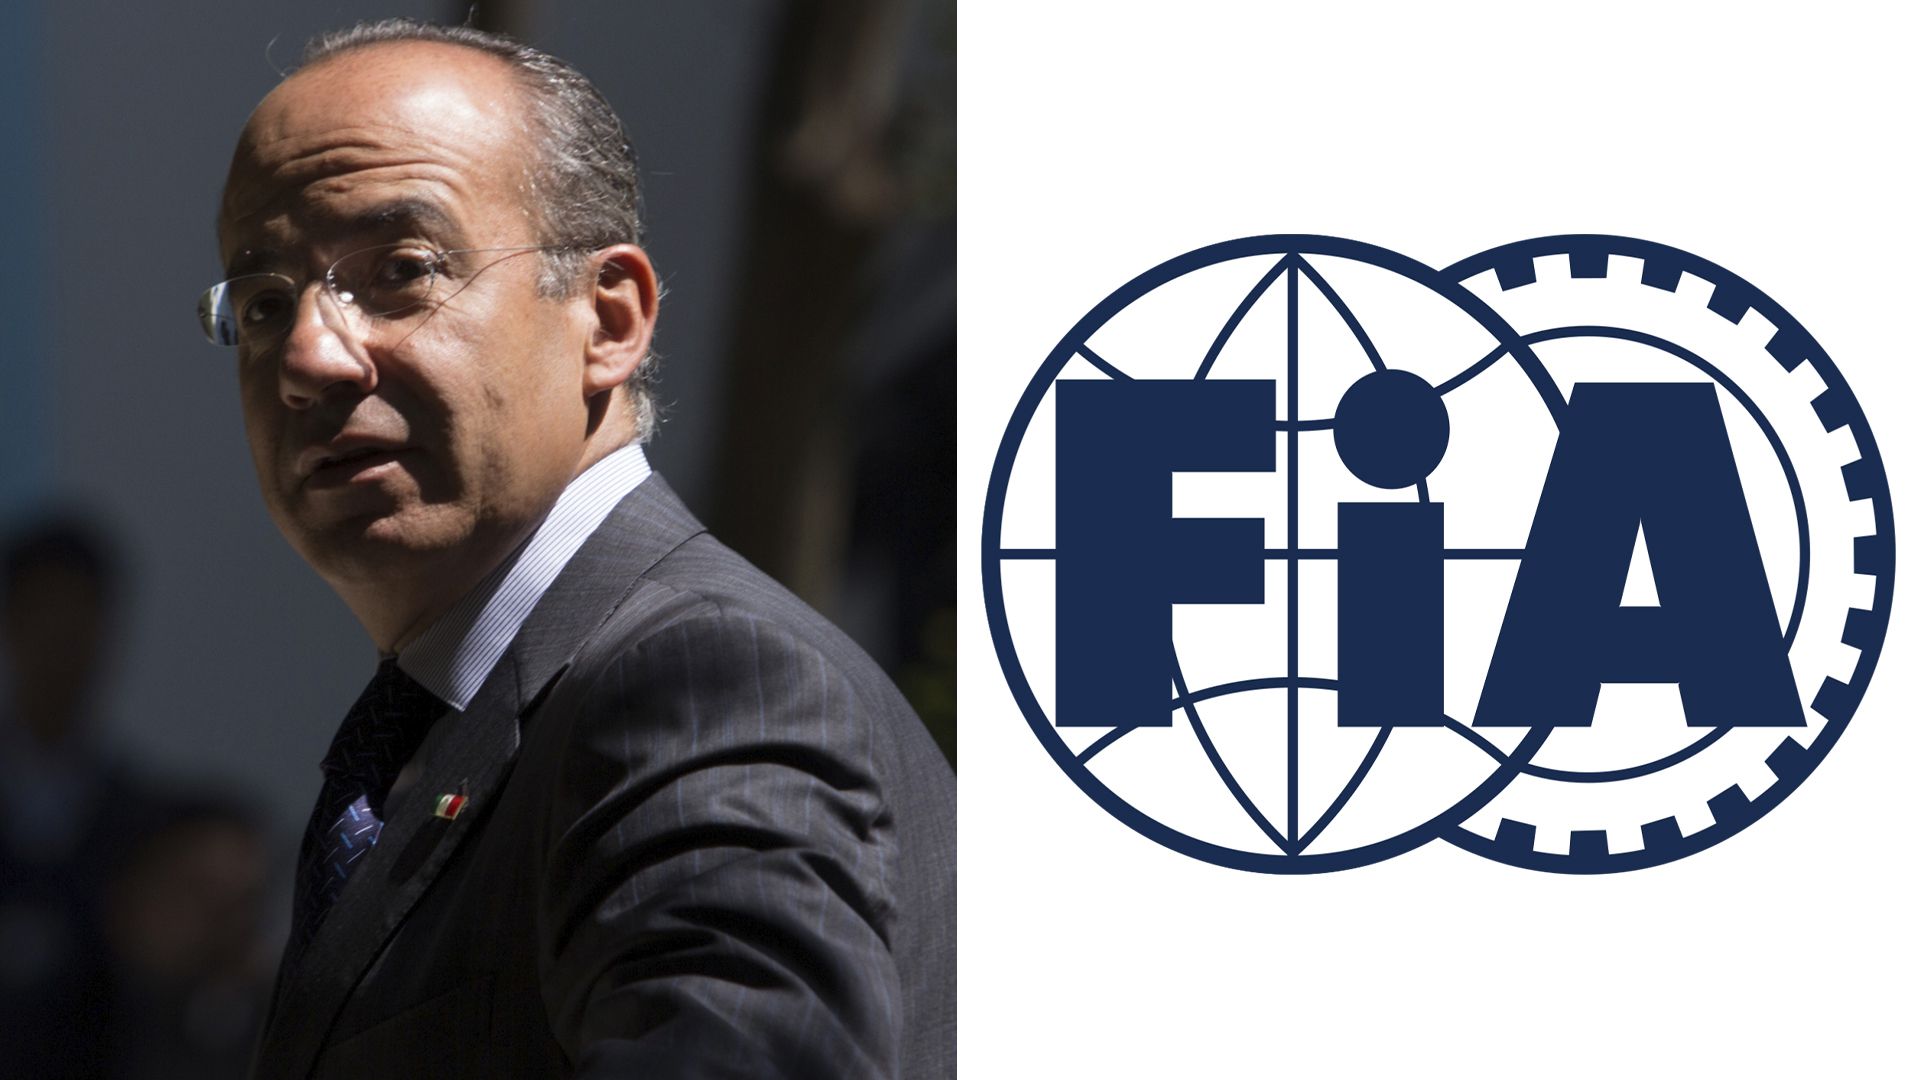 Felipe Calderón - FIA (Federación Internacional del Automóvil) - Felipe Calderón se unirá a FIA